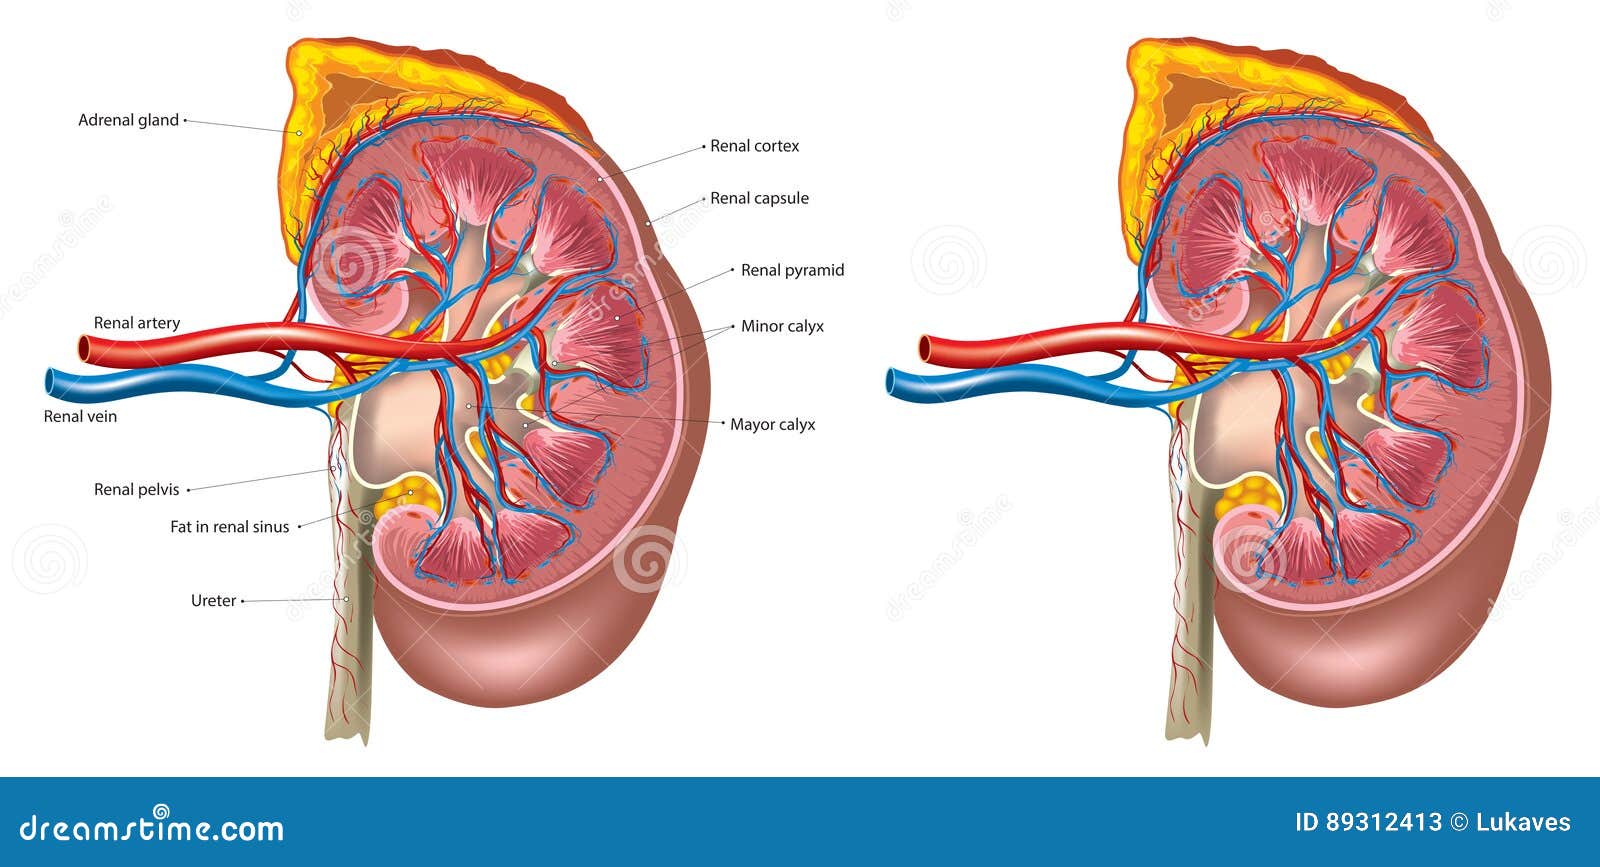 Kidney Structure Diagram | Quizlet